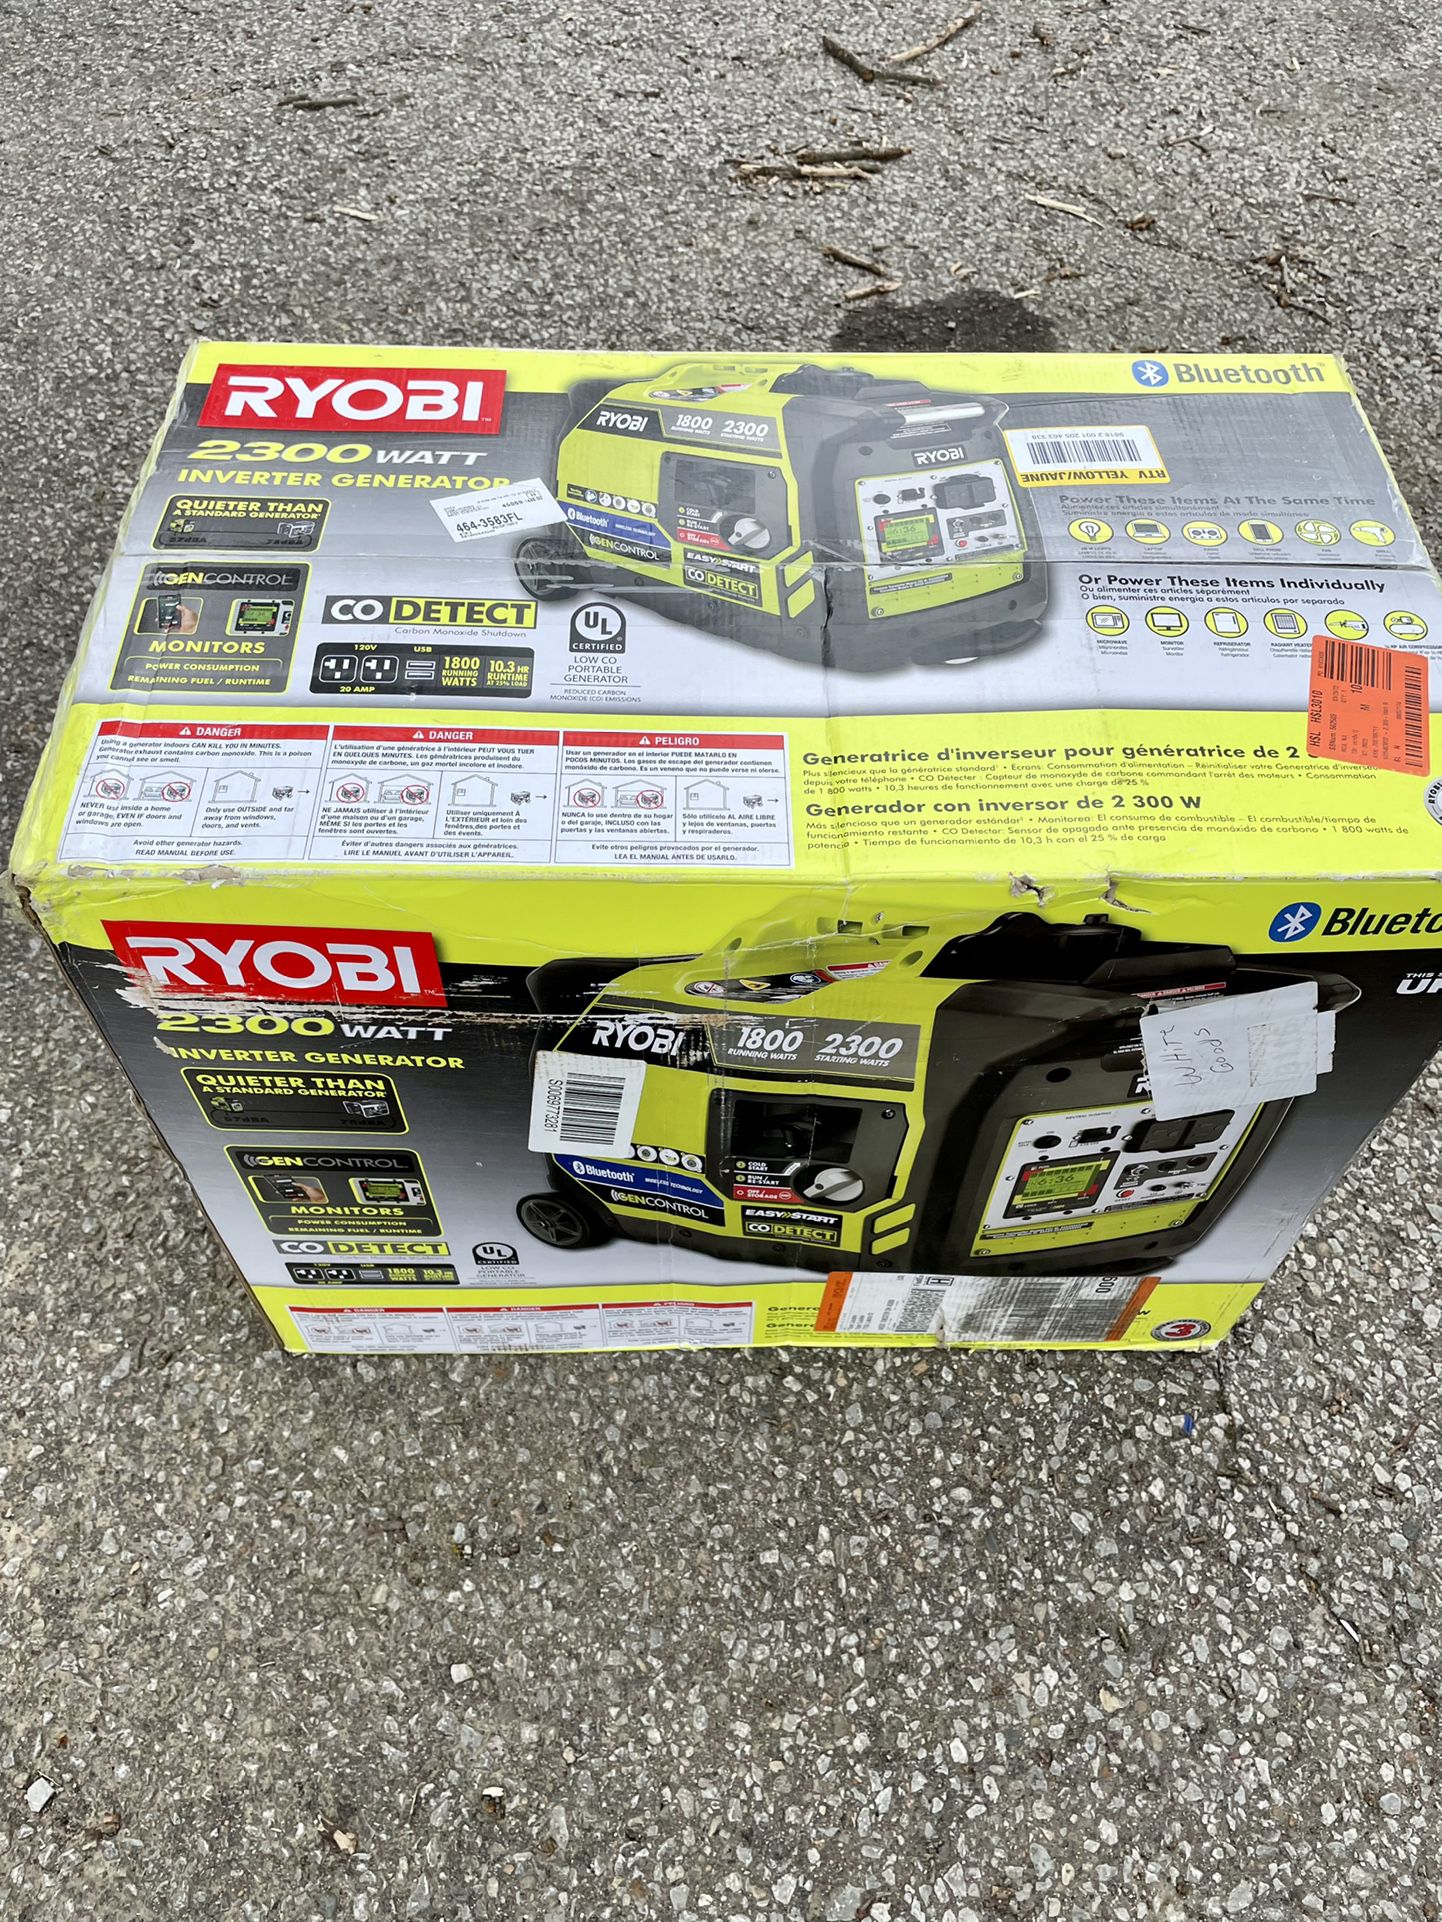 Brand new Ryobi 2300 Watt Inverter Generator